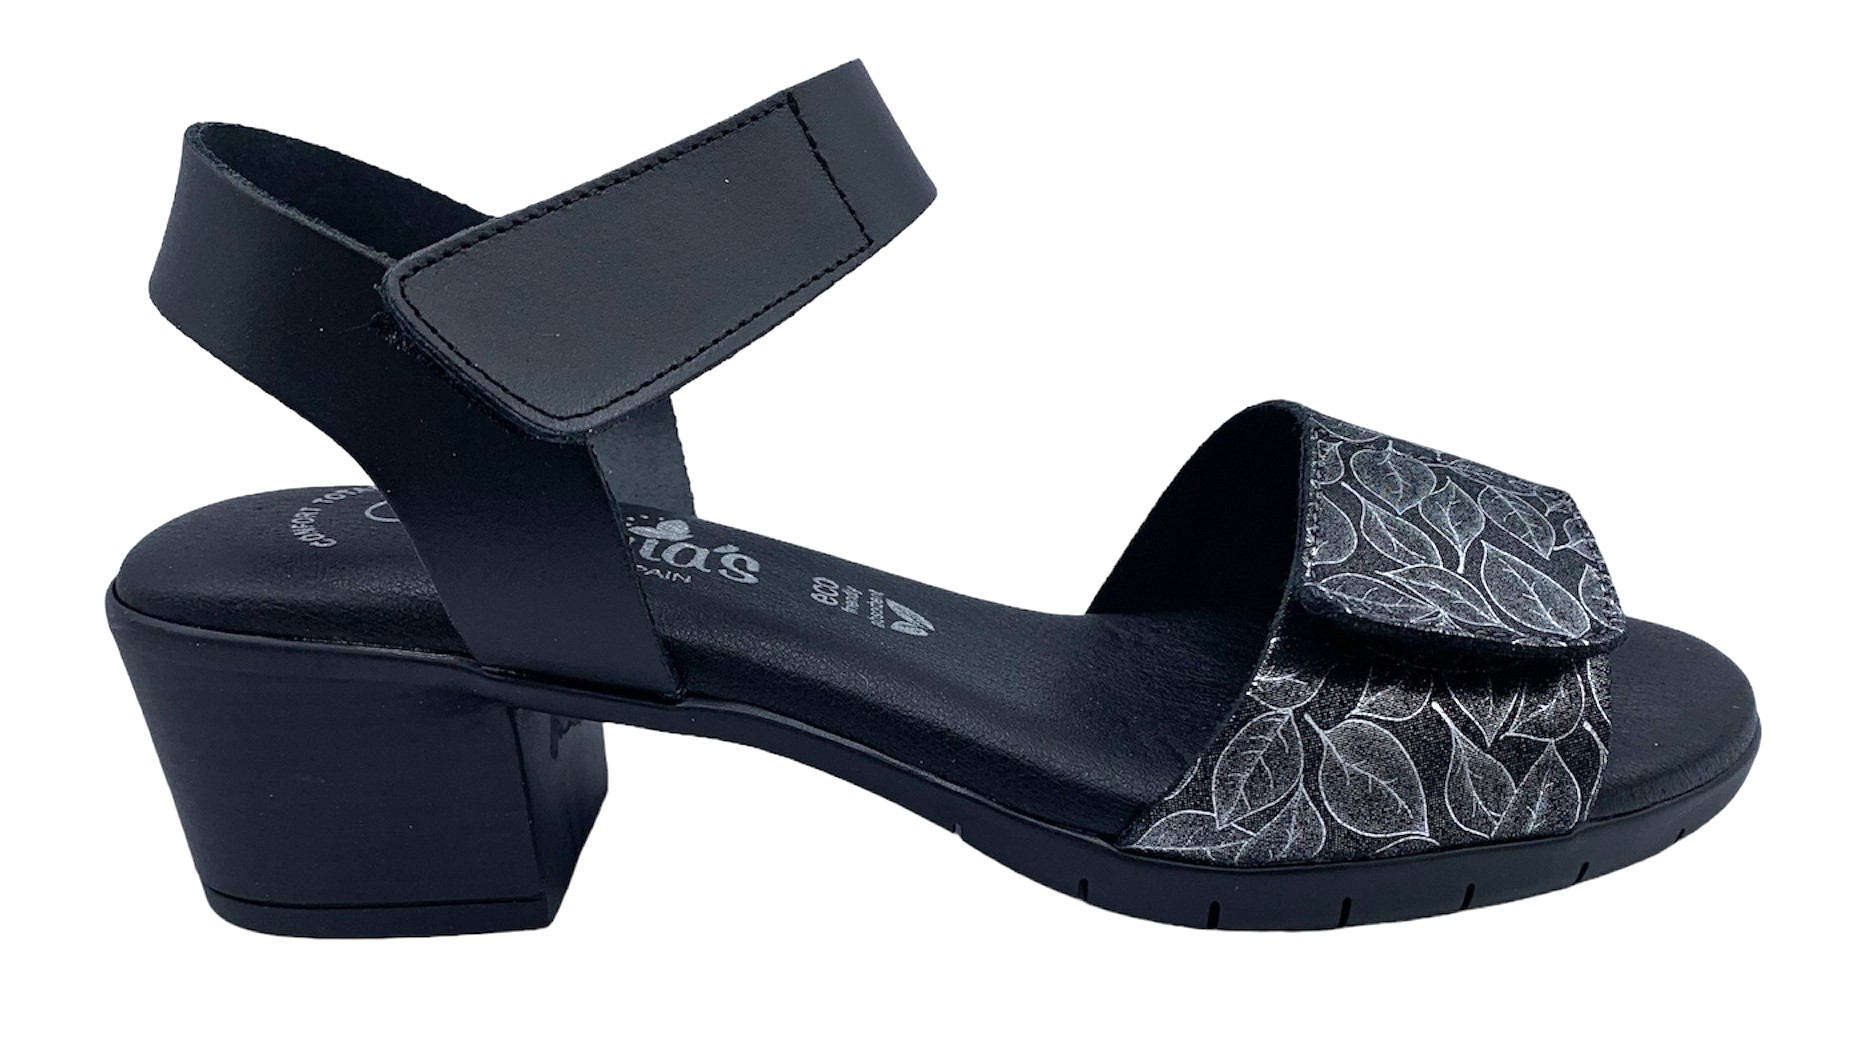 Dámské kožené sandále na podpatku MISSTIC 1172 černé Velikost: 36 (EU)